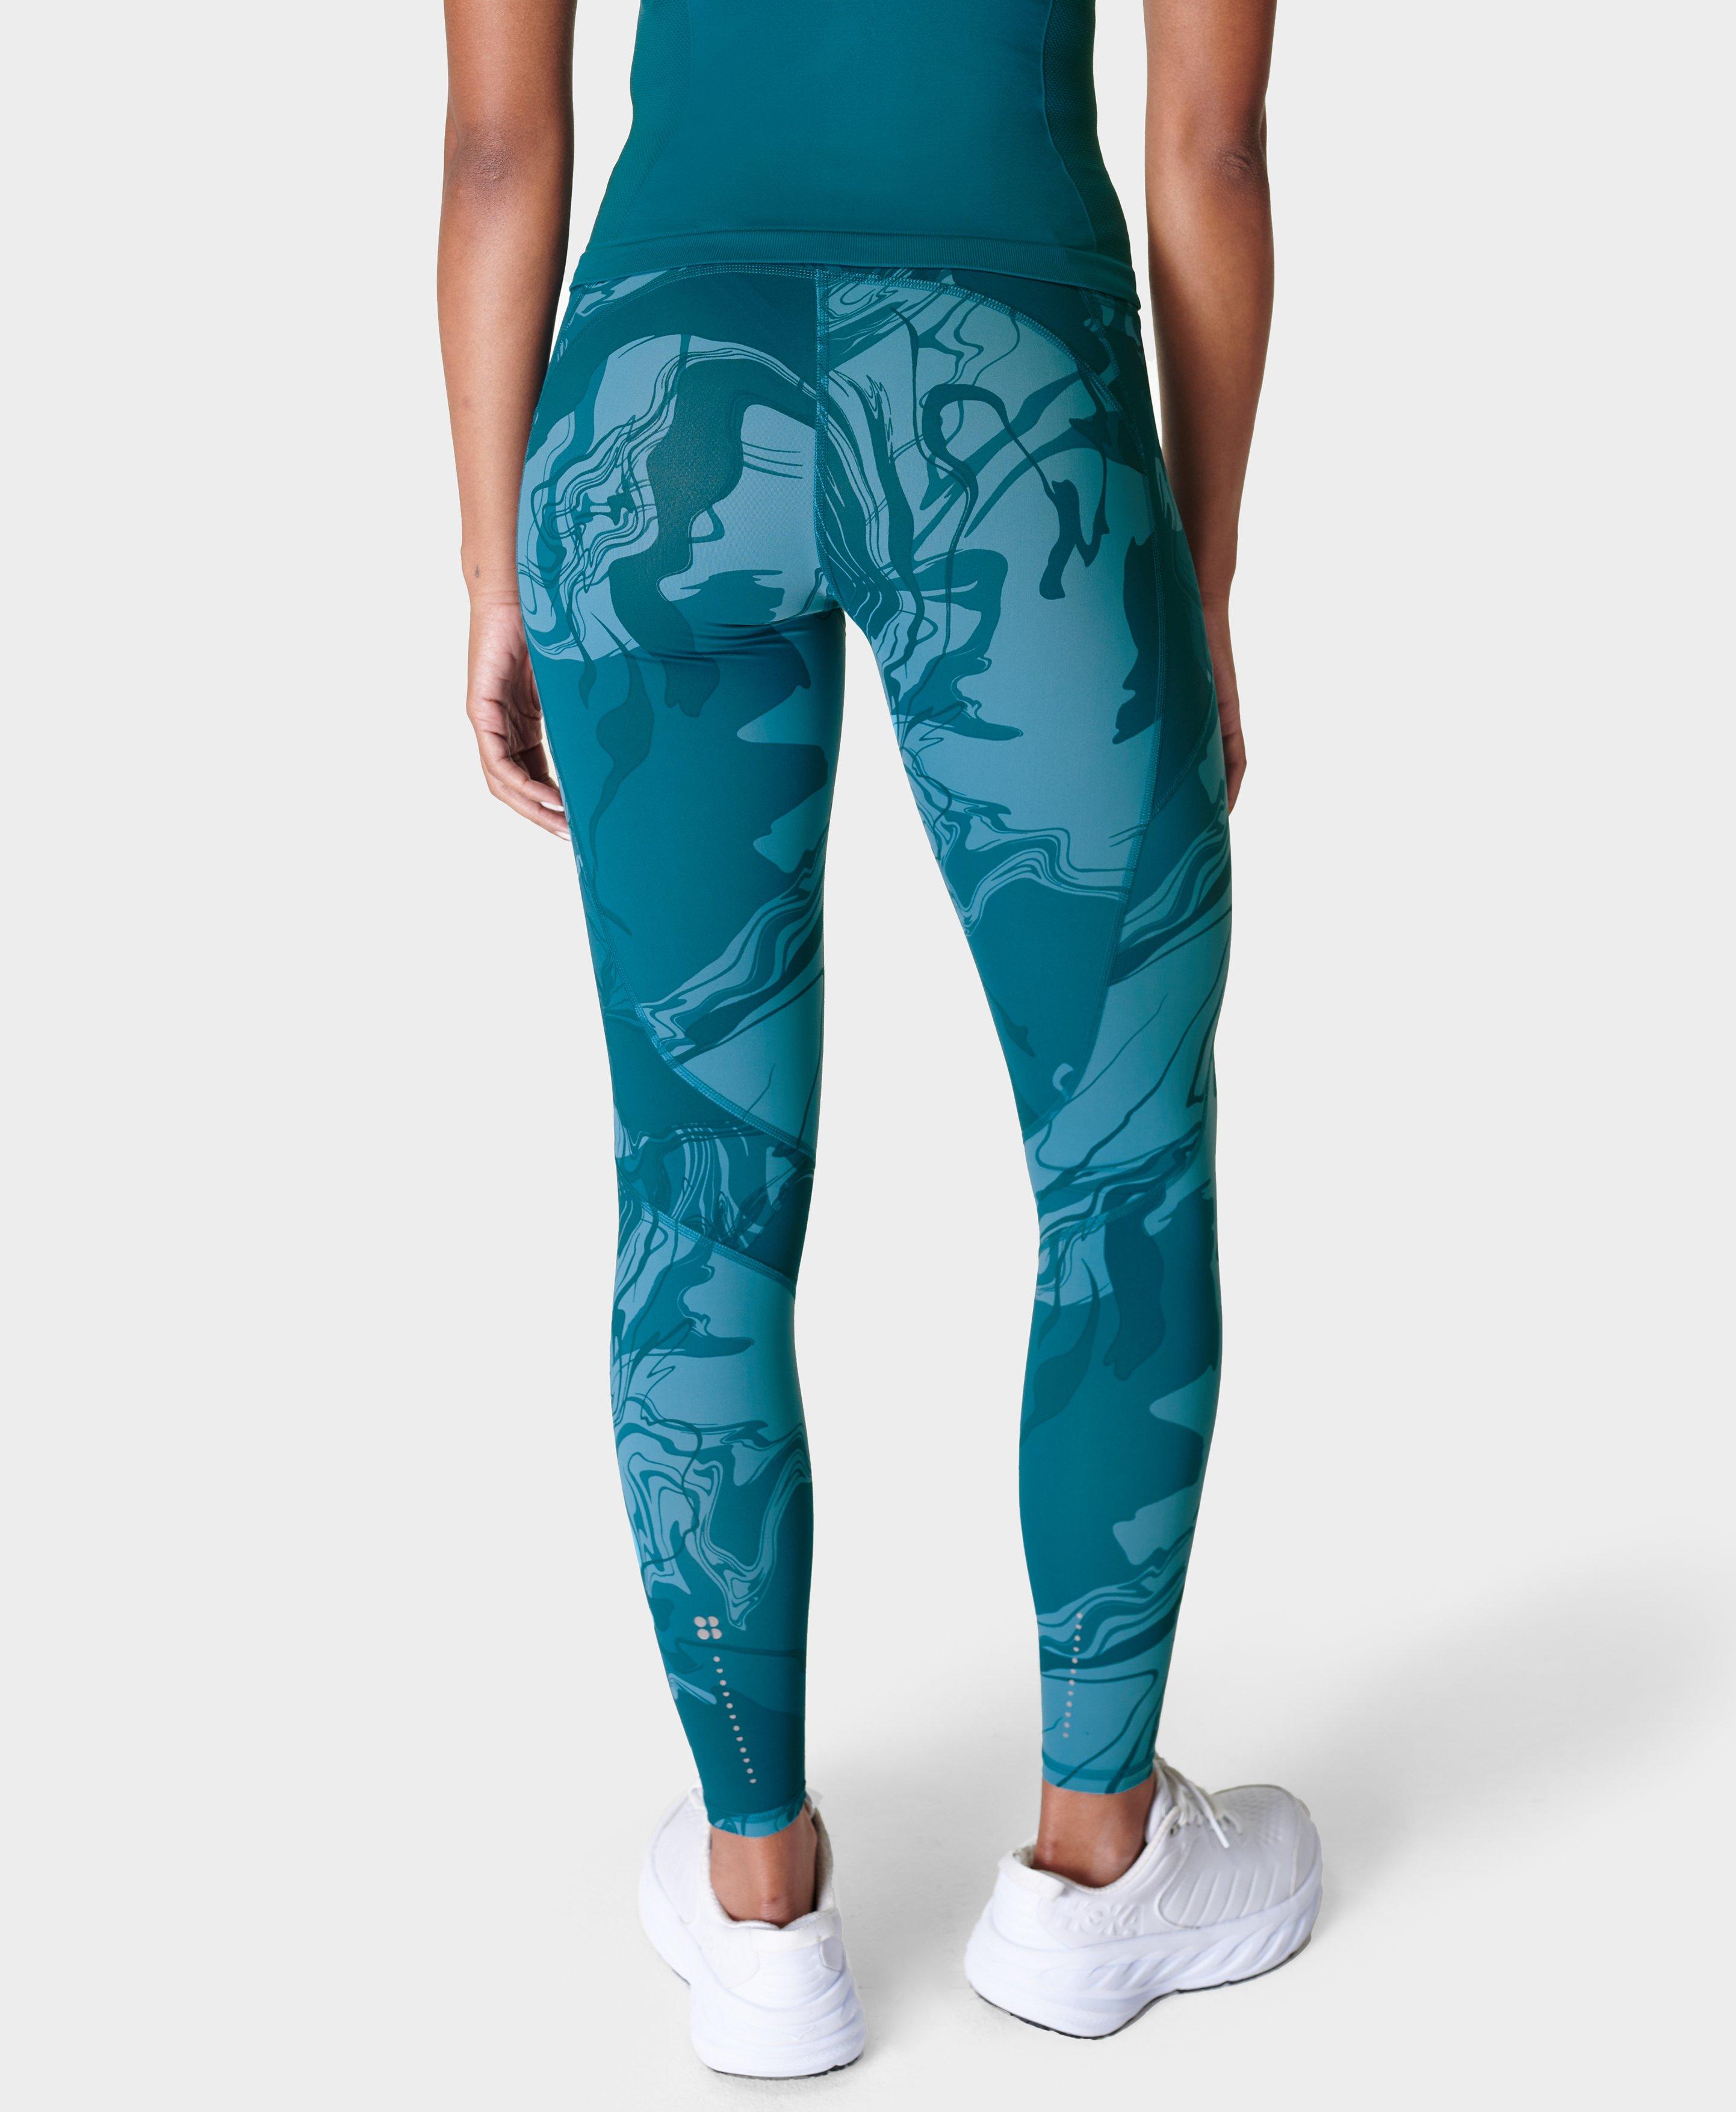 Women's Tek Gear Printed High Waisted Capri Leggings White & Blue Swirls  Print